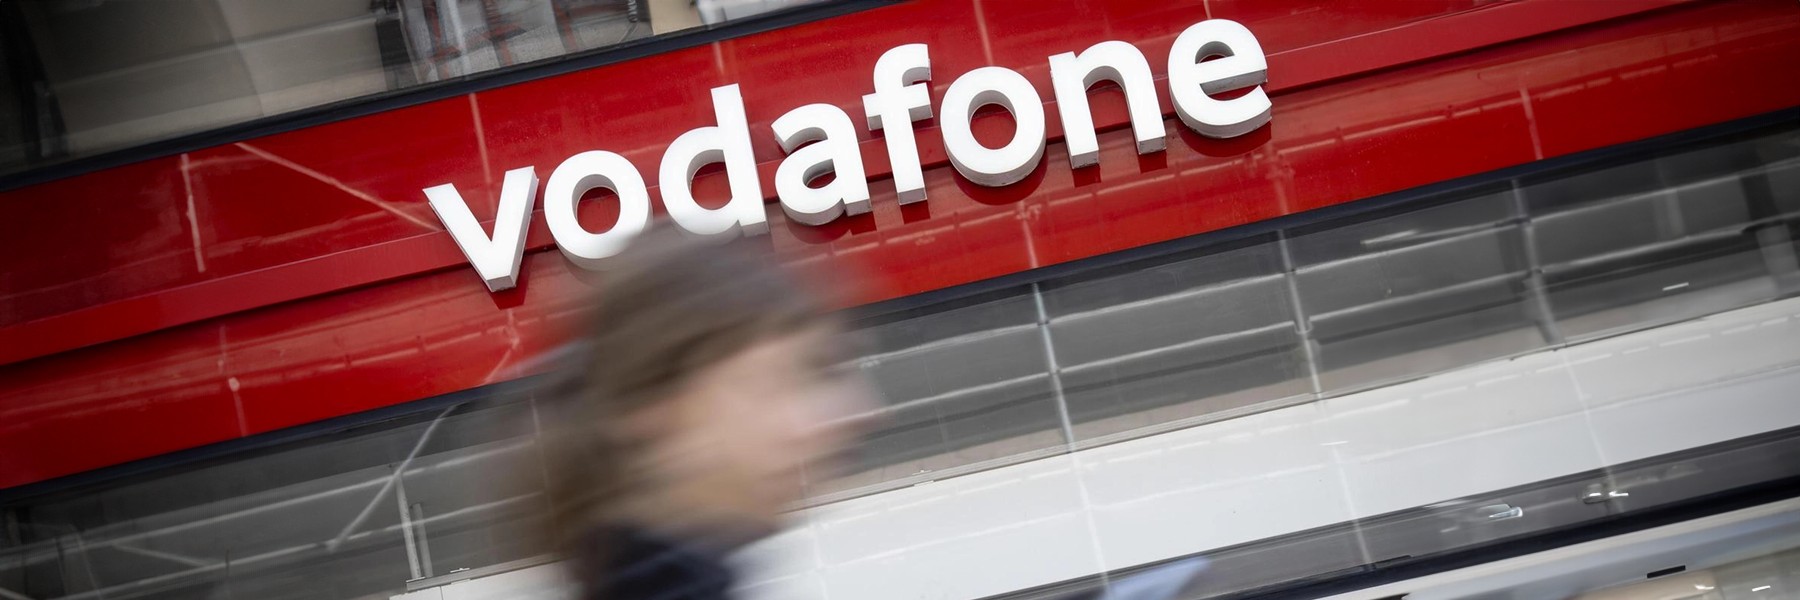 Vodafone, à partir de juillet jusqu’à 13 euros de plus par mois pour certains fixes professionnels